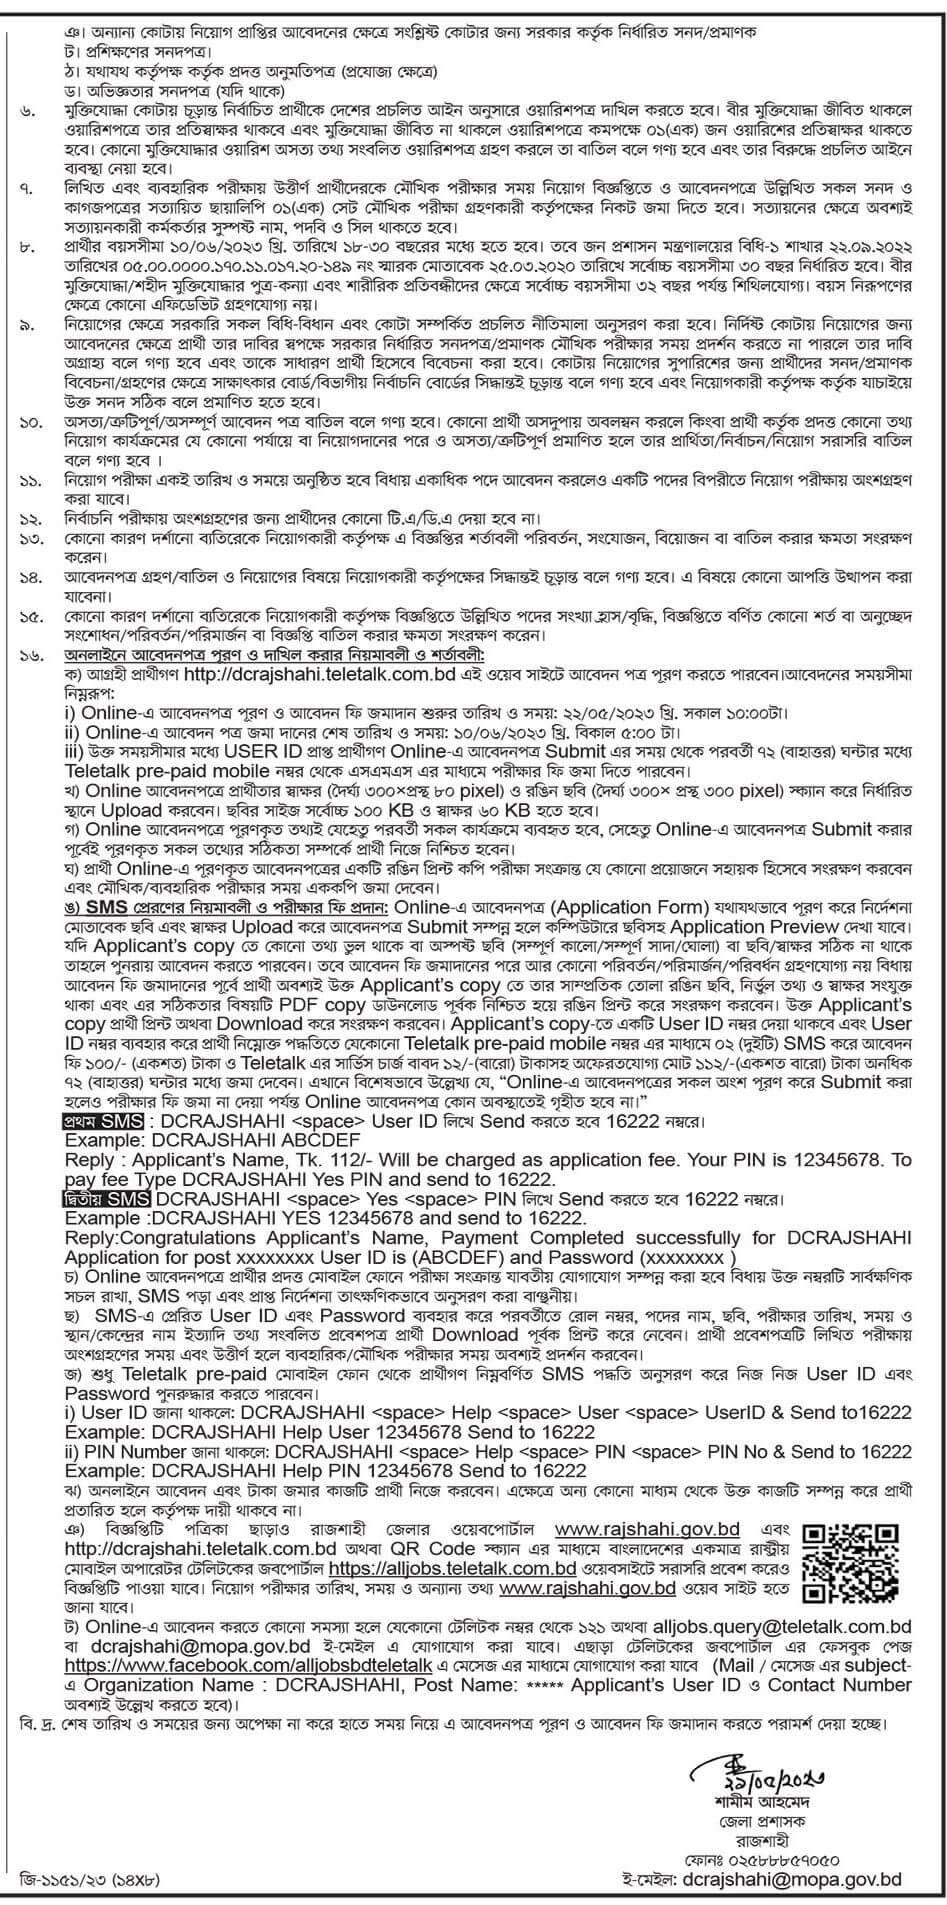 রাজশাহী জেলা প্রশাসক কার্যালয় নিয়োগ বিজ্ঞপ্তি ২০২৩ | Rajshahi DC Office Job Circular 2023